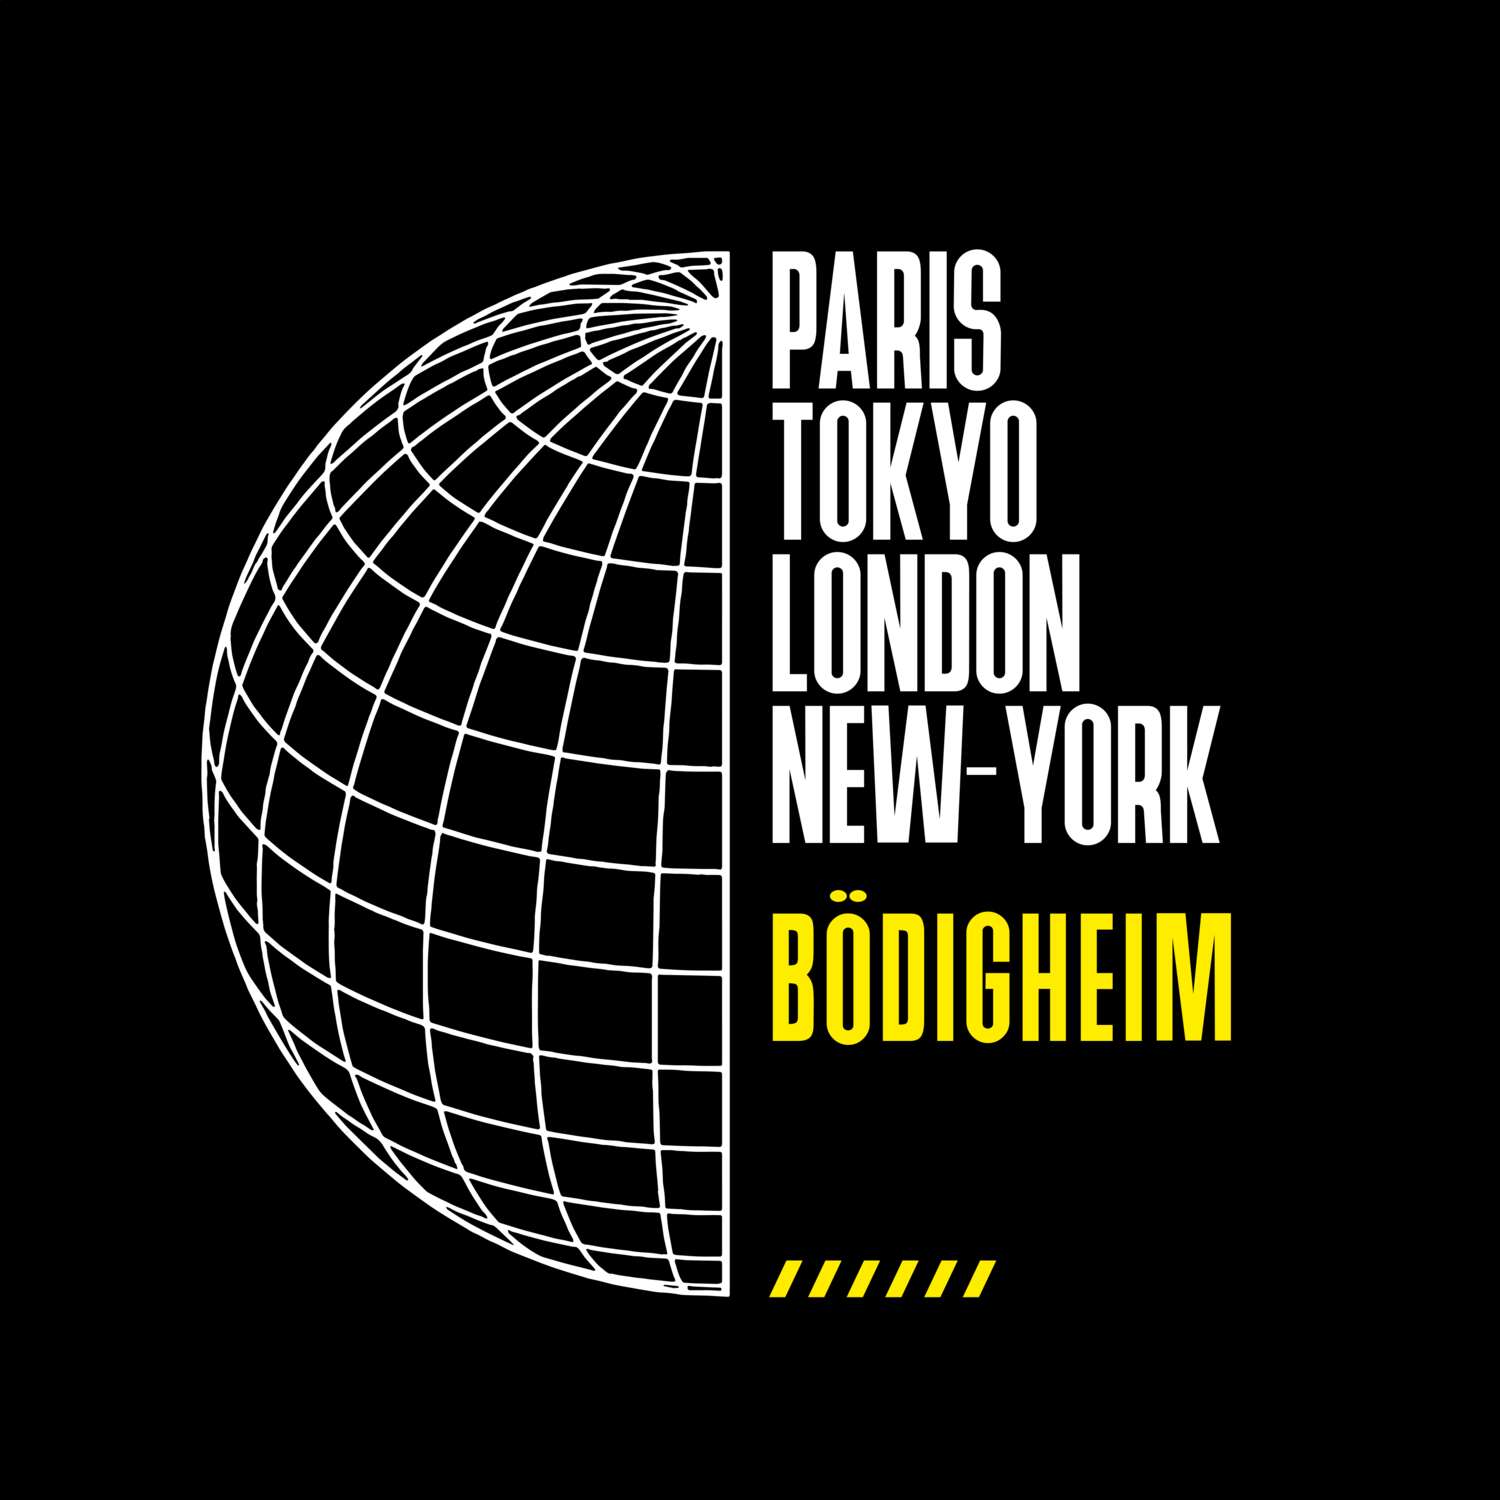 Bödigheim T-Shirt »Paris Tokyo London«